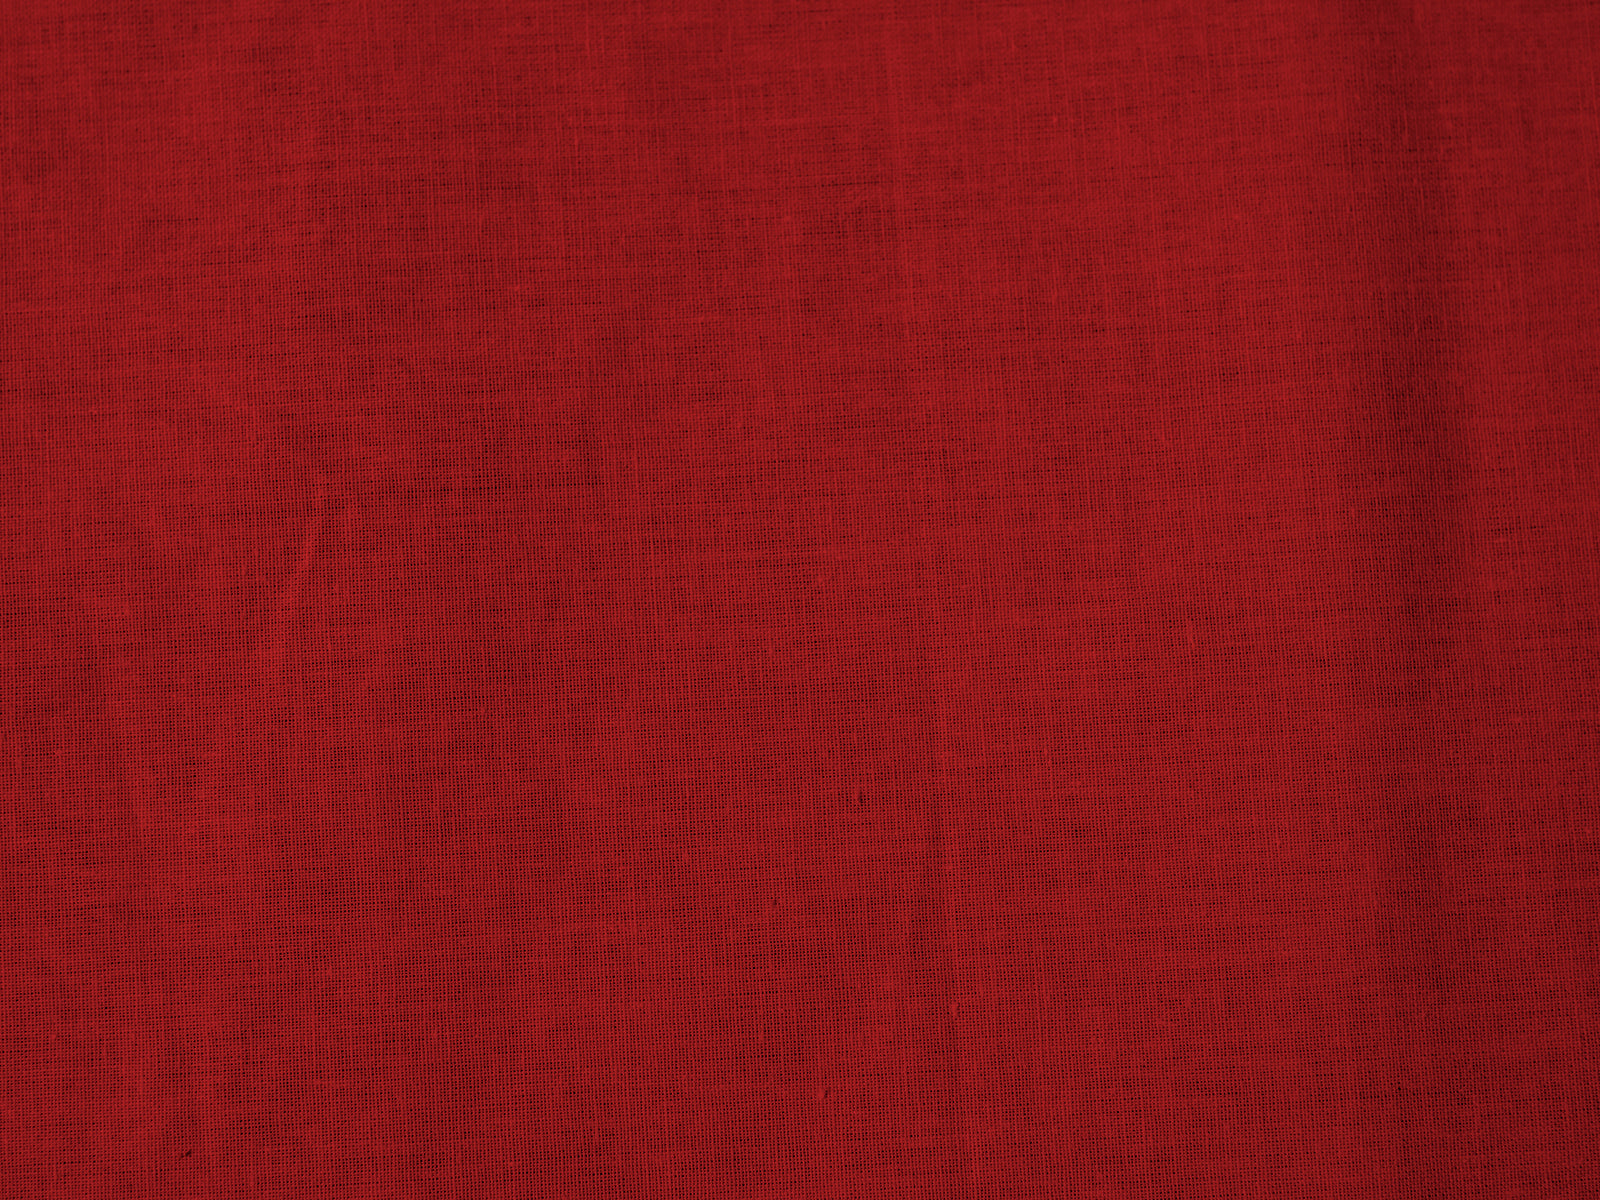 Dejorine - Nappe  en Coton - Teinte Terre rouge - Couleur Rouge